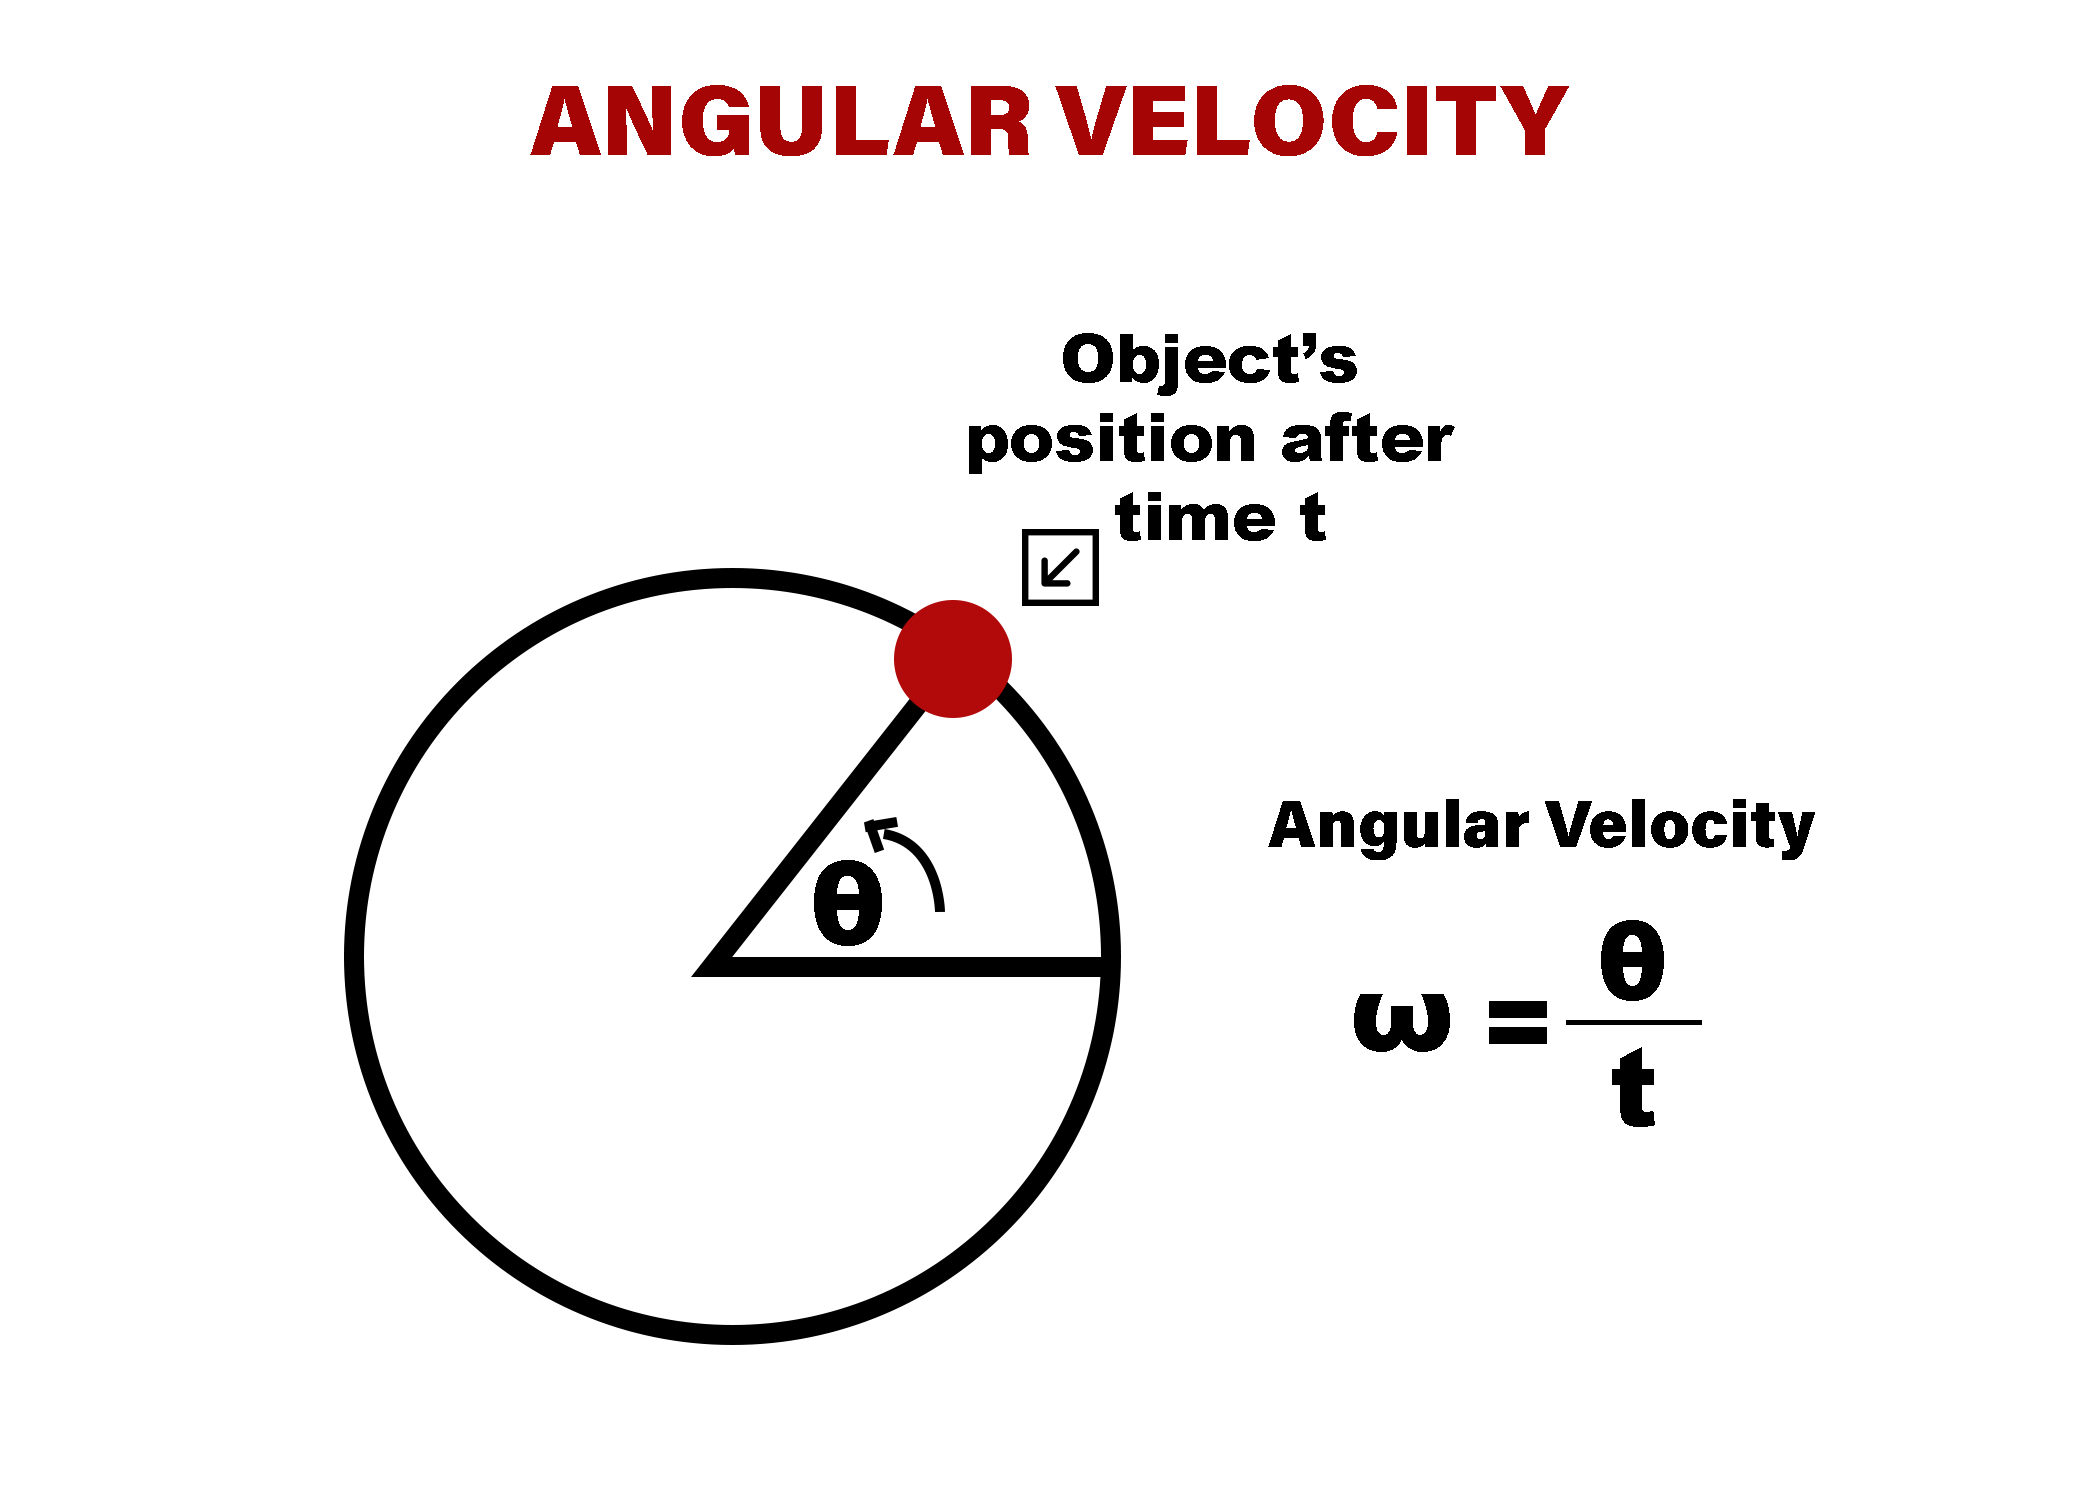 Angular Velocity